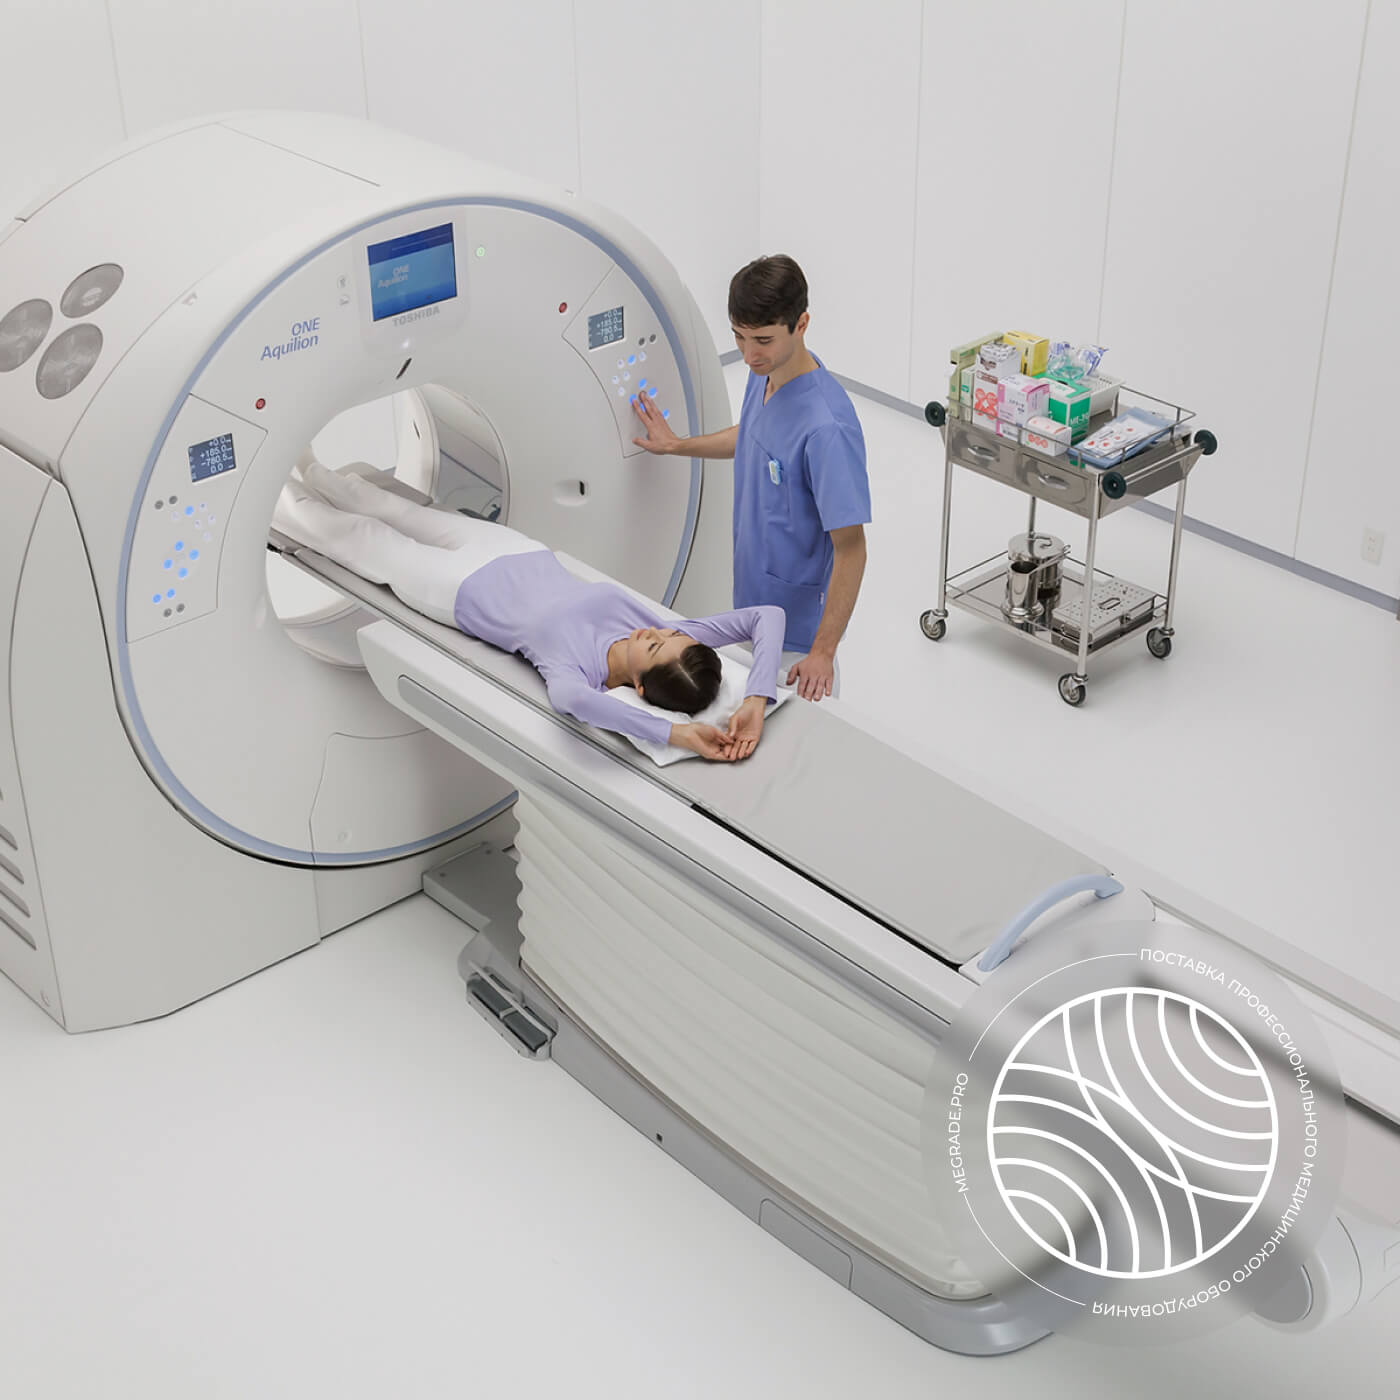 Магнитно-резонансный томограф Canon Vantage Elan